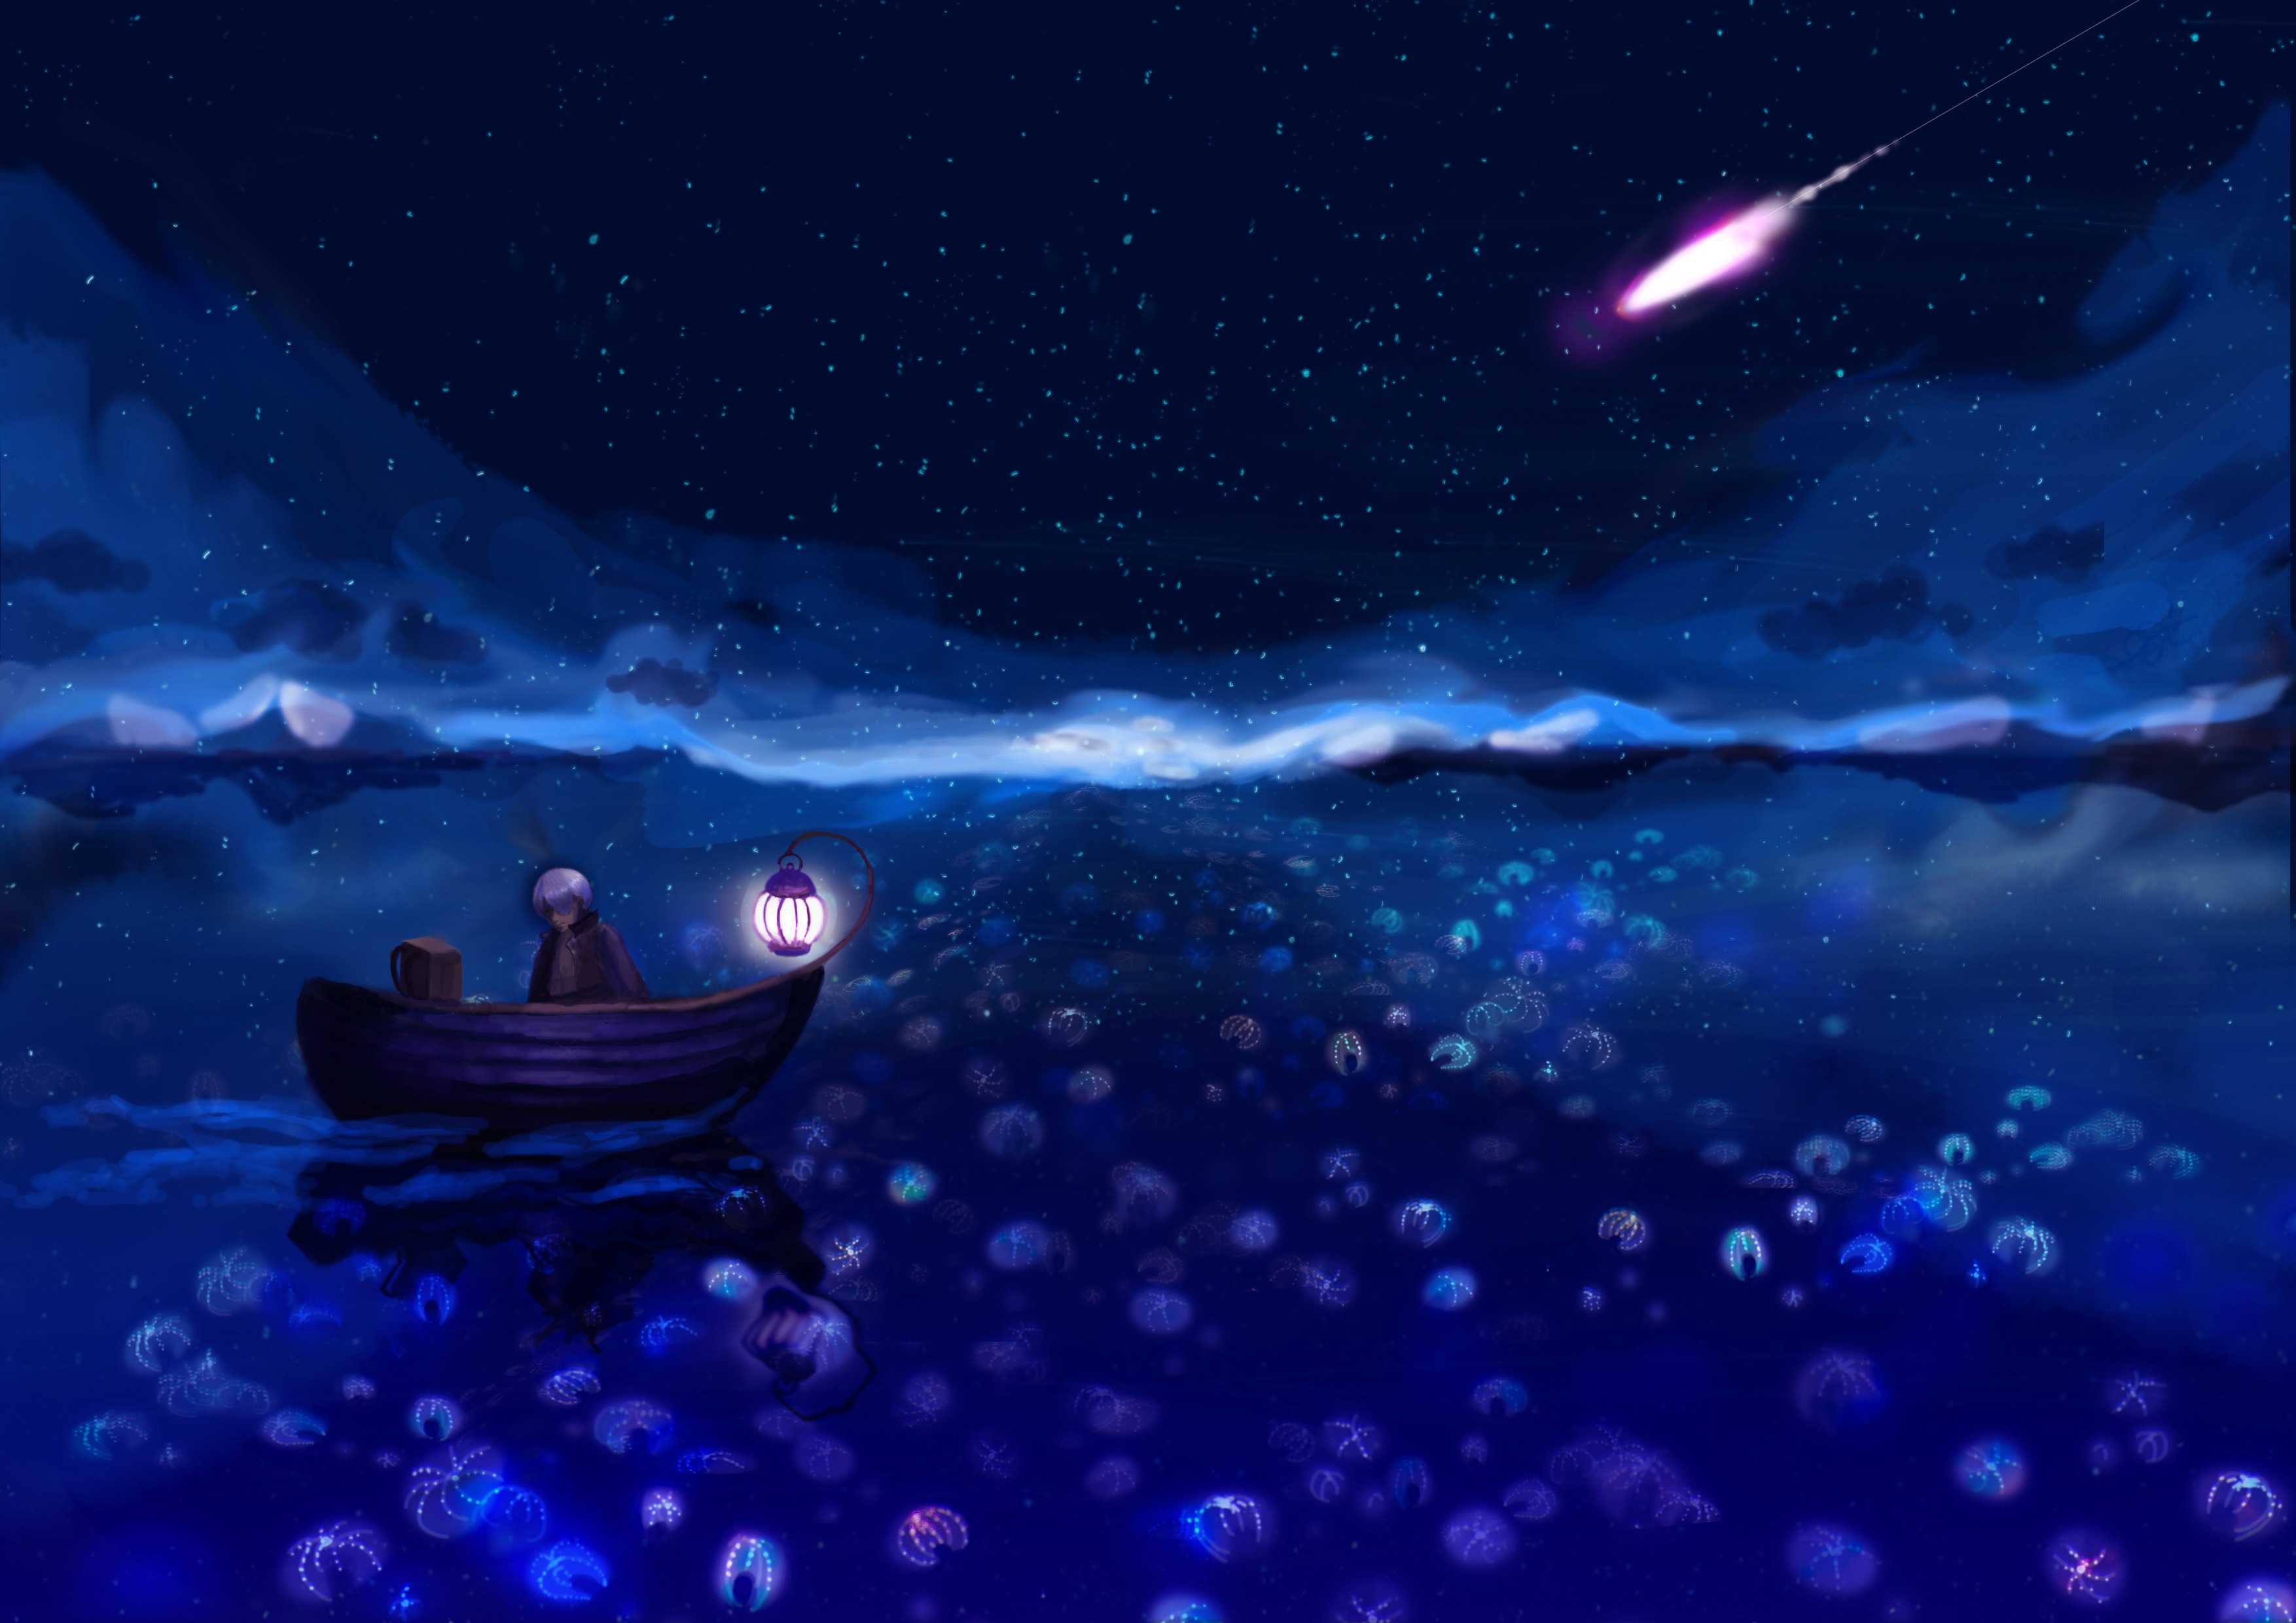 Лодочка колыбельная. Лодка ночью. Лодка и звездное небо. Ночь фэнтези.